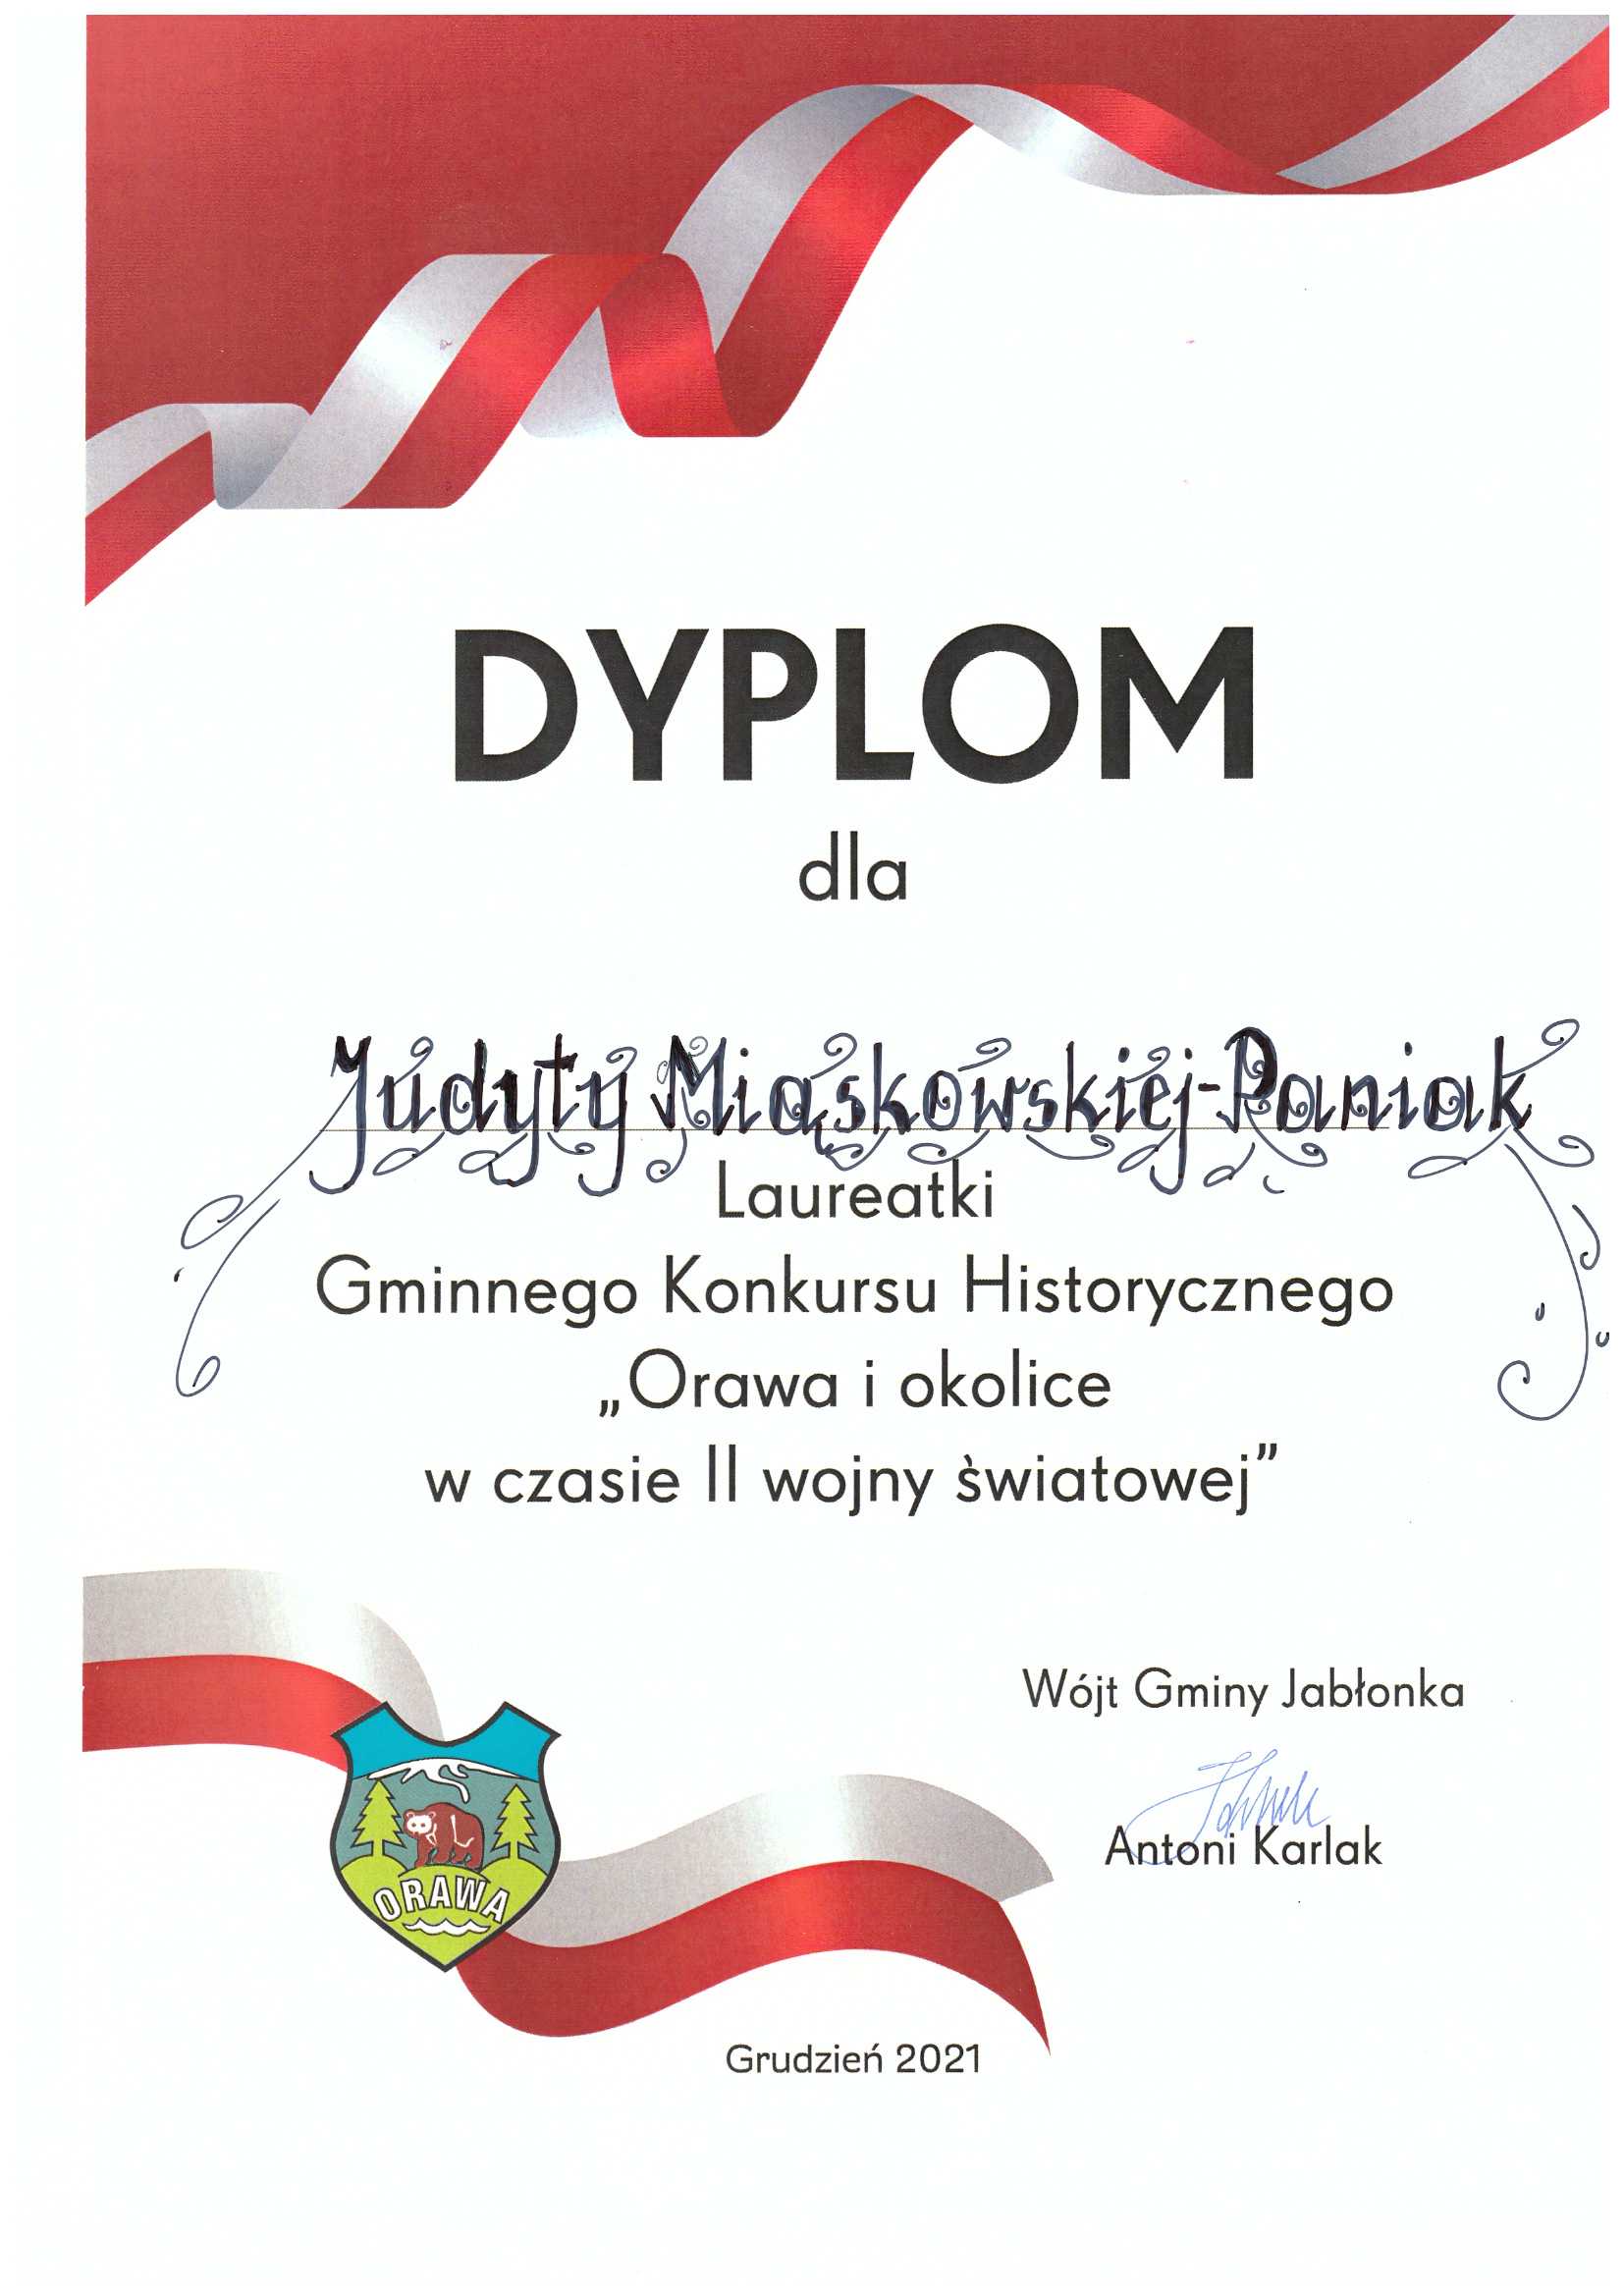 Dyplom dla Judyty Miąskowskiej-Paniak laureatki Gminnego Konkursu Historycznego "Orawa i okolice w czasie II wojny światowej"